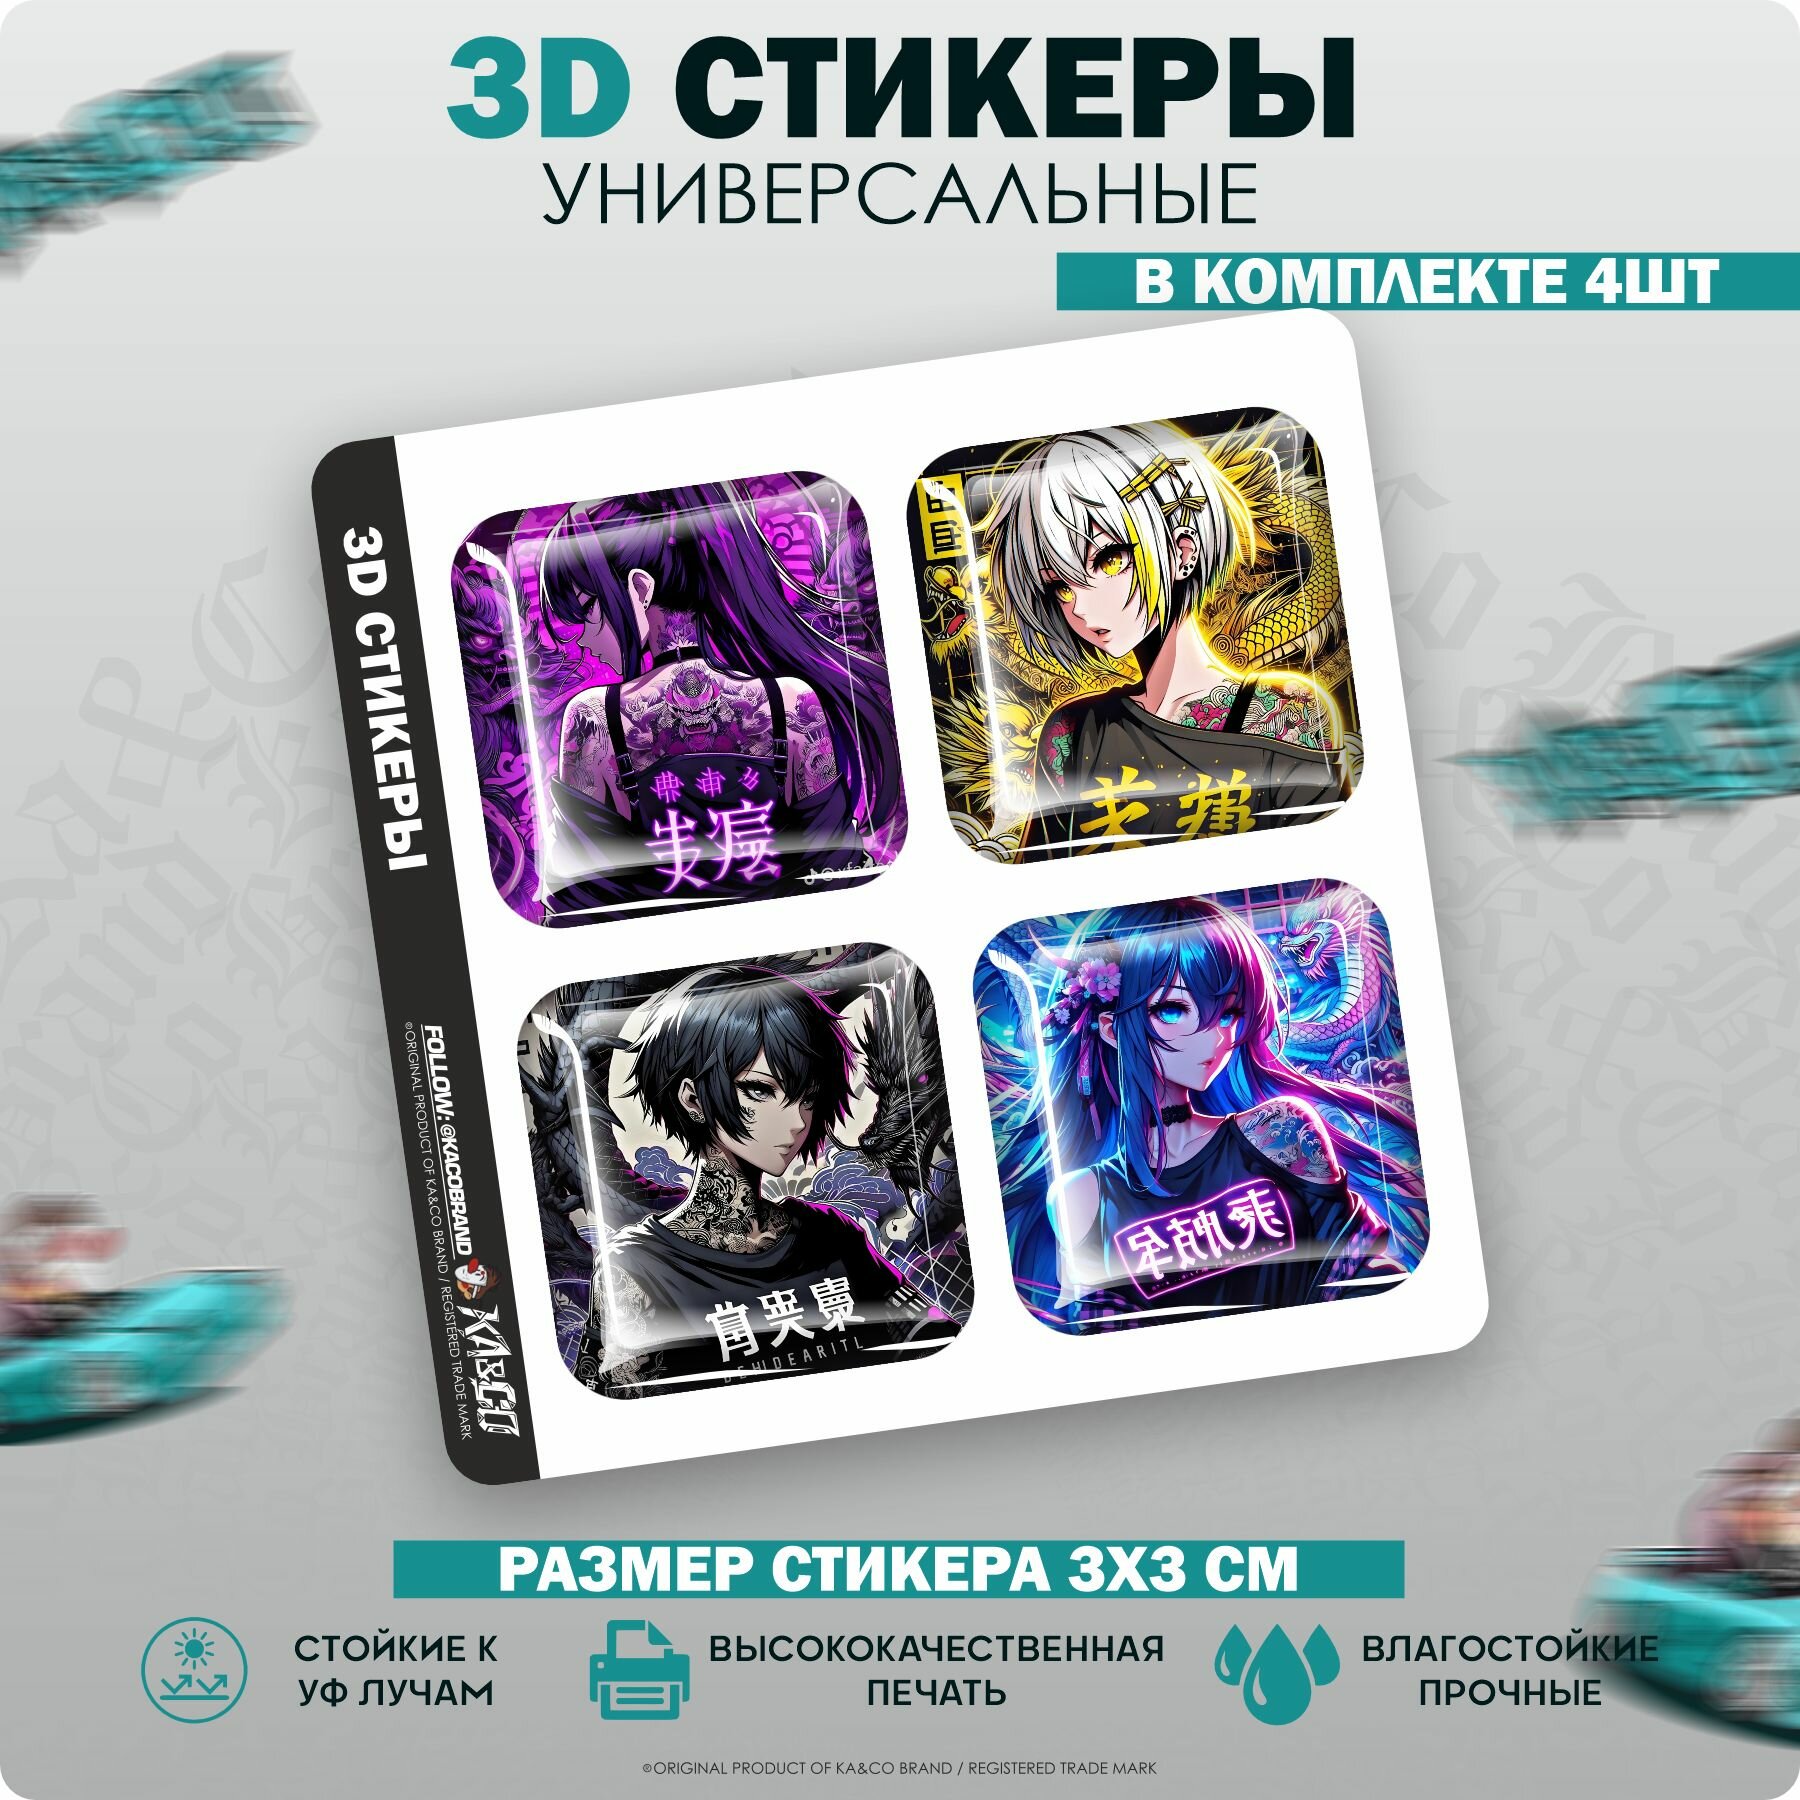 3D стикеры наклейки на телефон Anime Tyan Pack v4